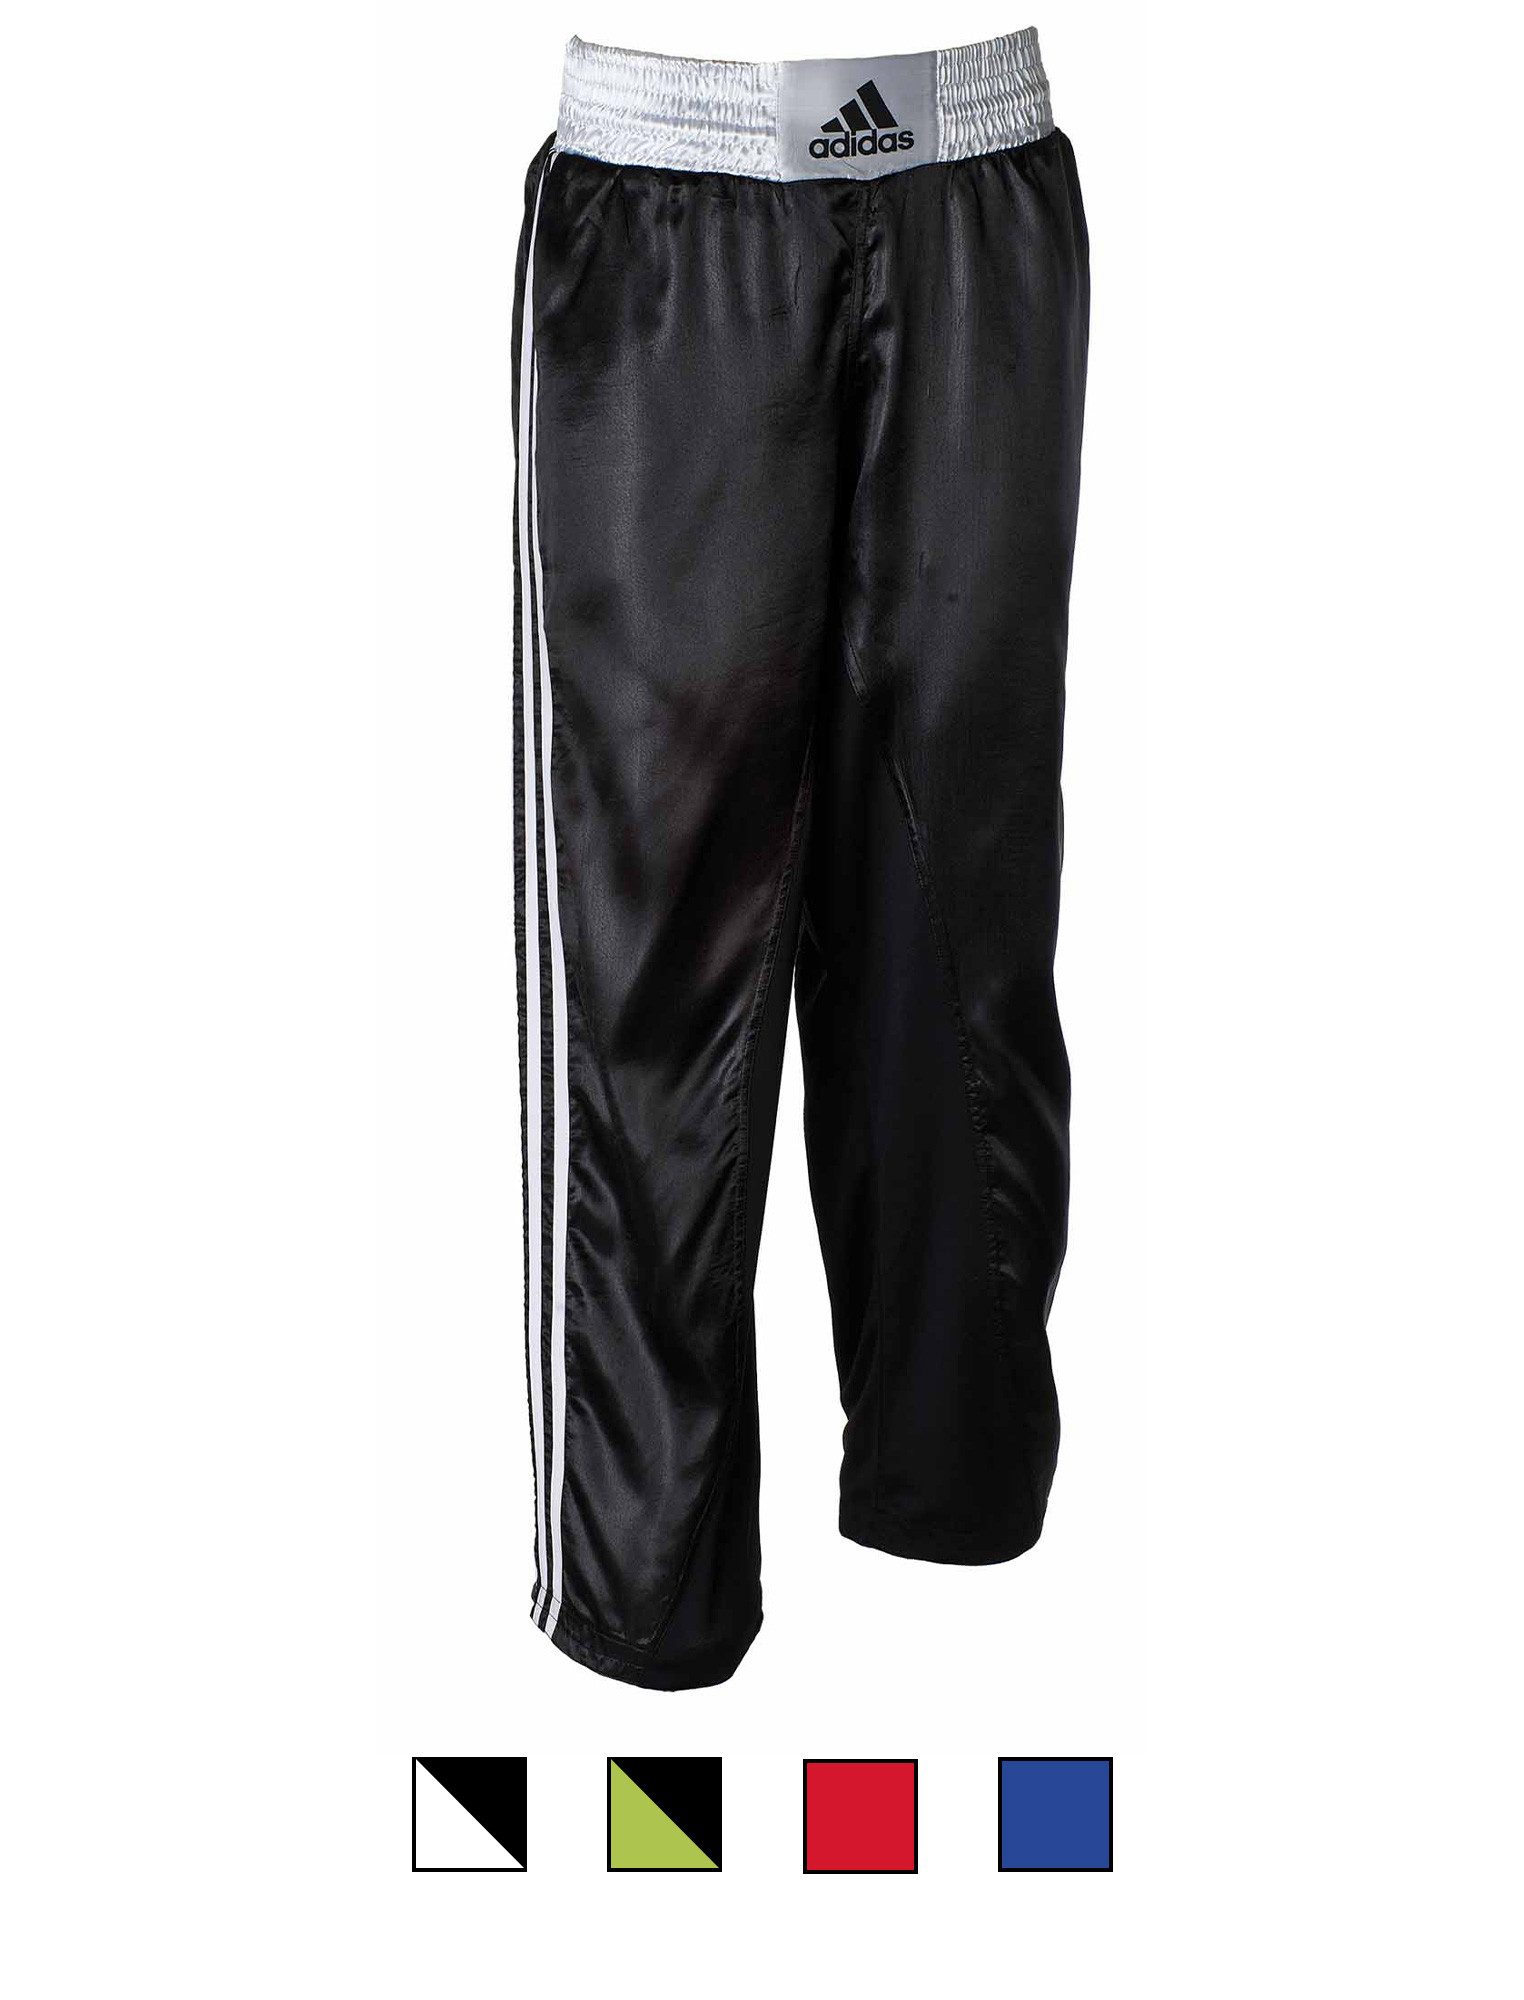 adidas kick boxing pants adiKBUN110T, black/white